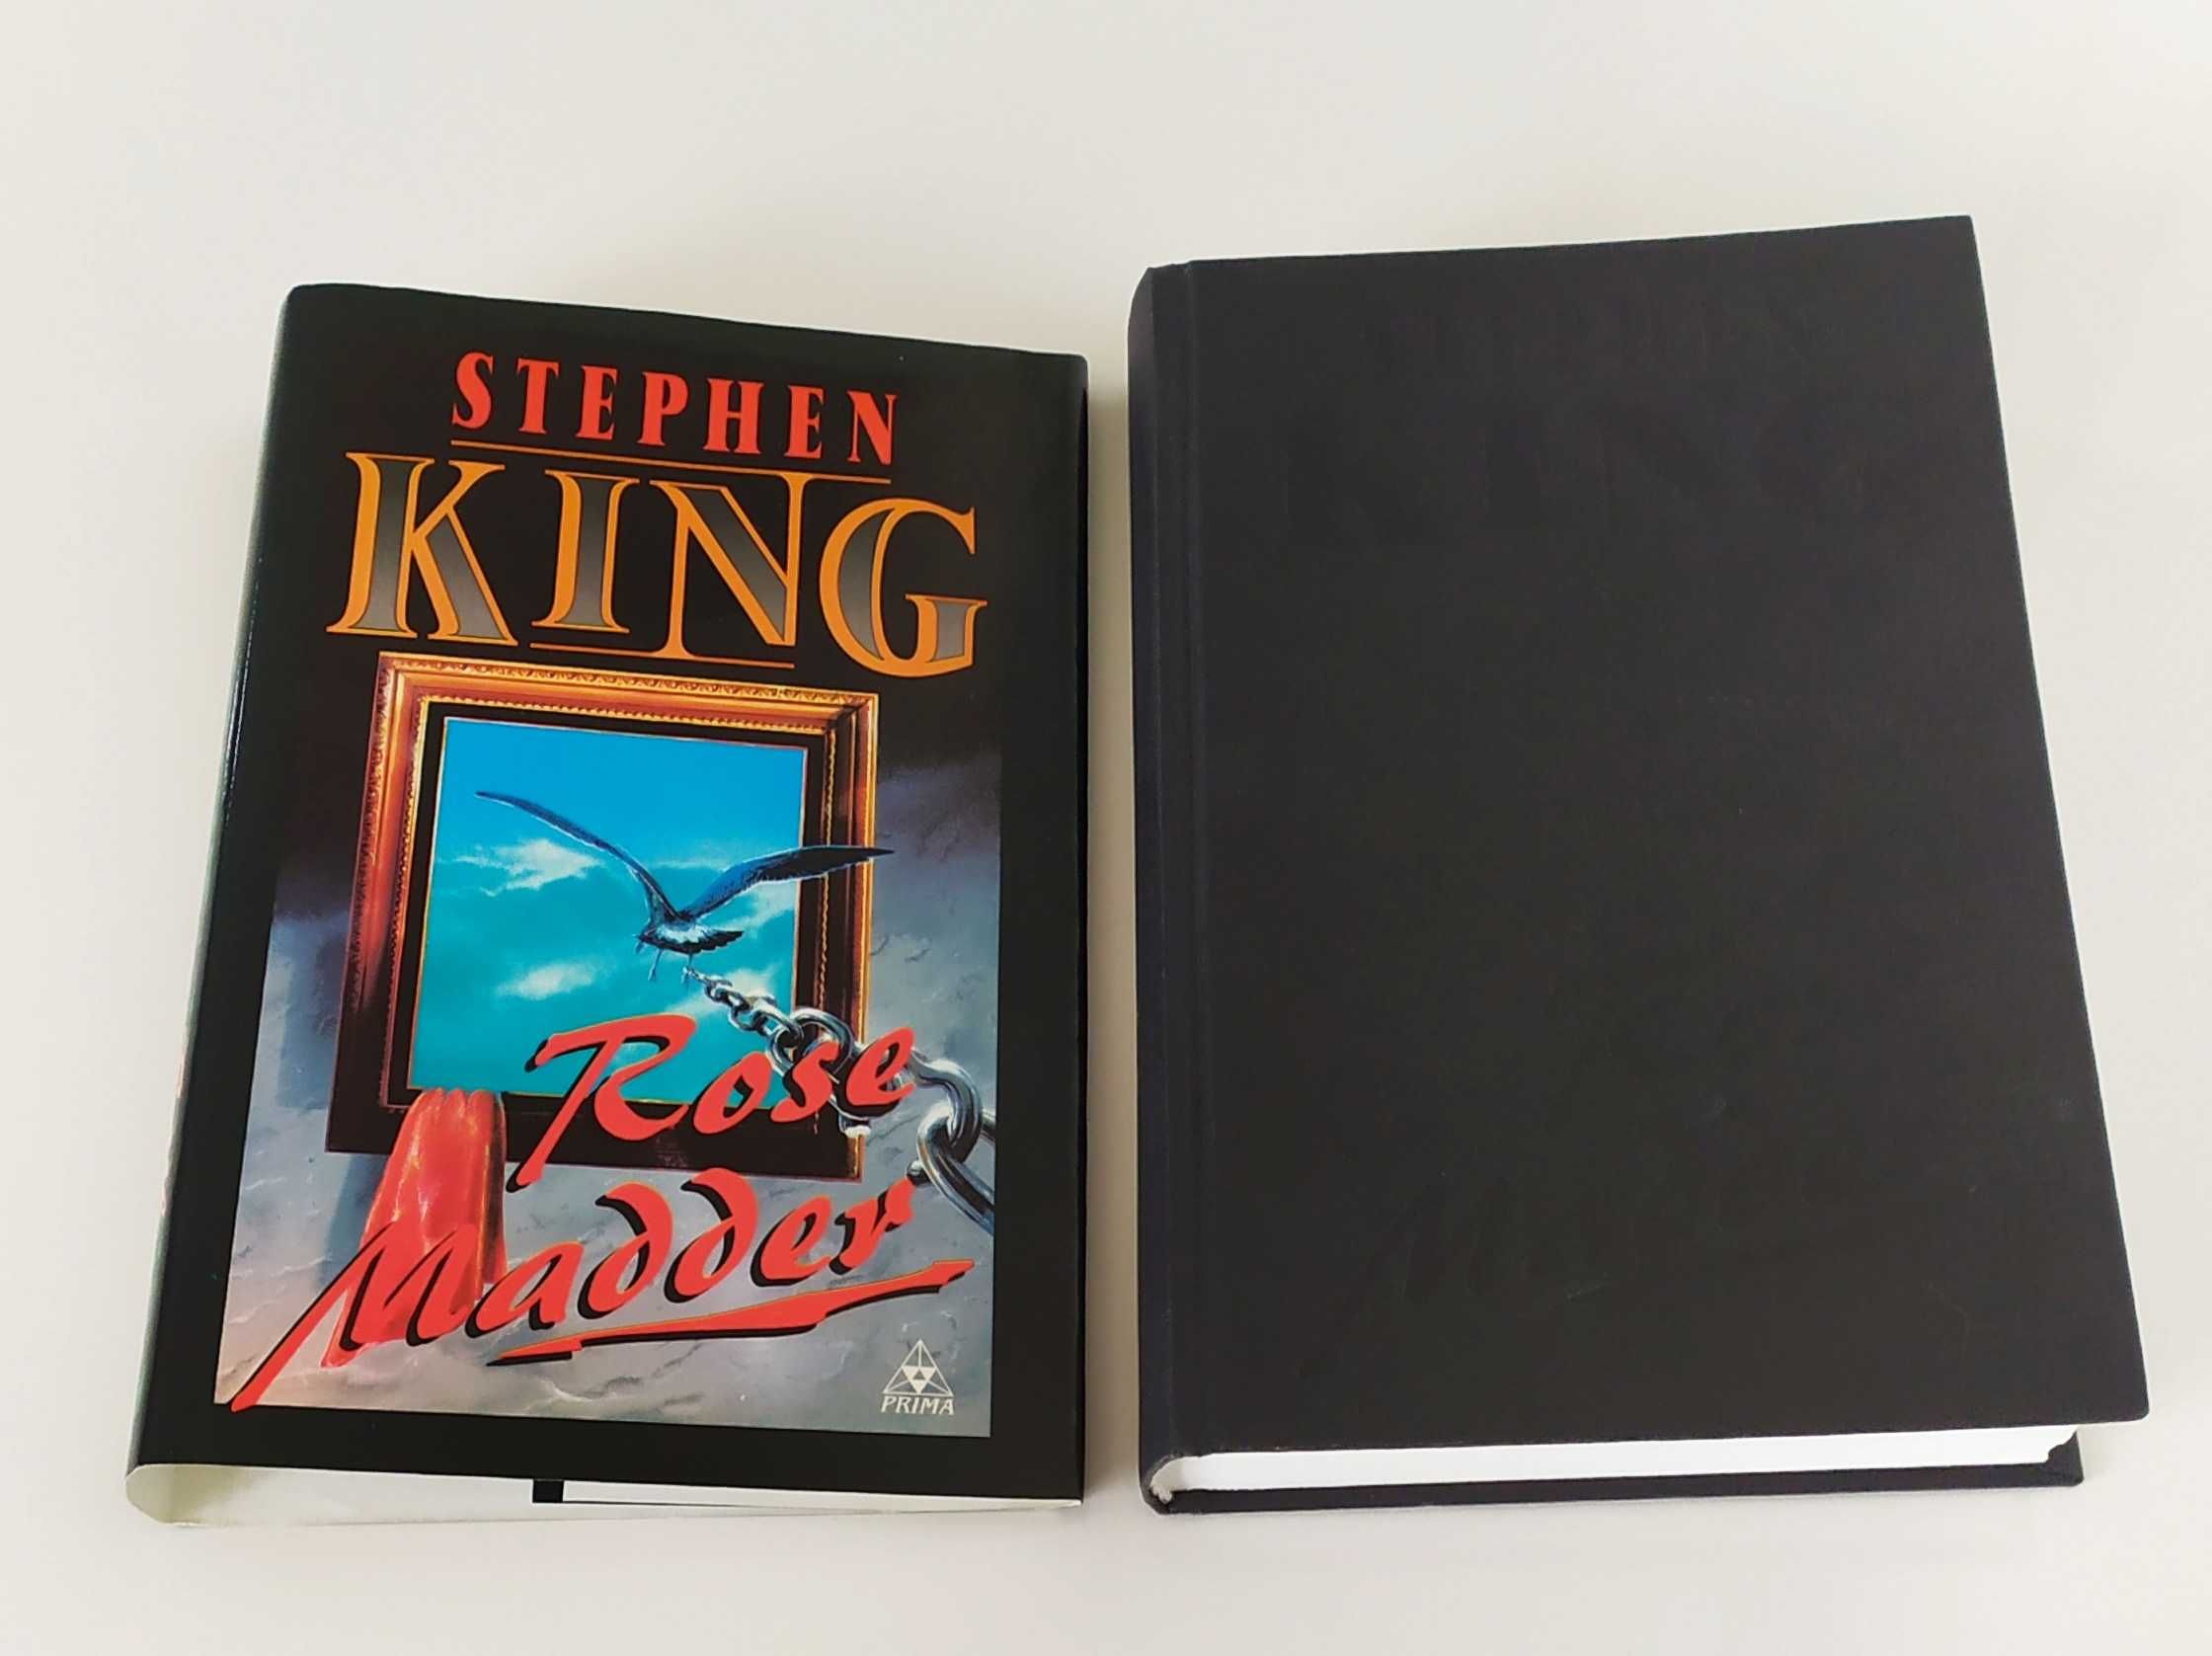 STEPHEN KING 2 książki w twardej oprawie, jak nowe.